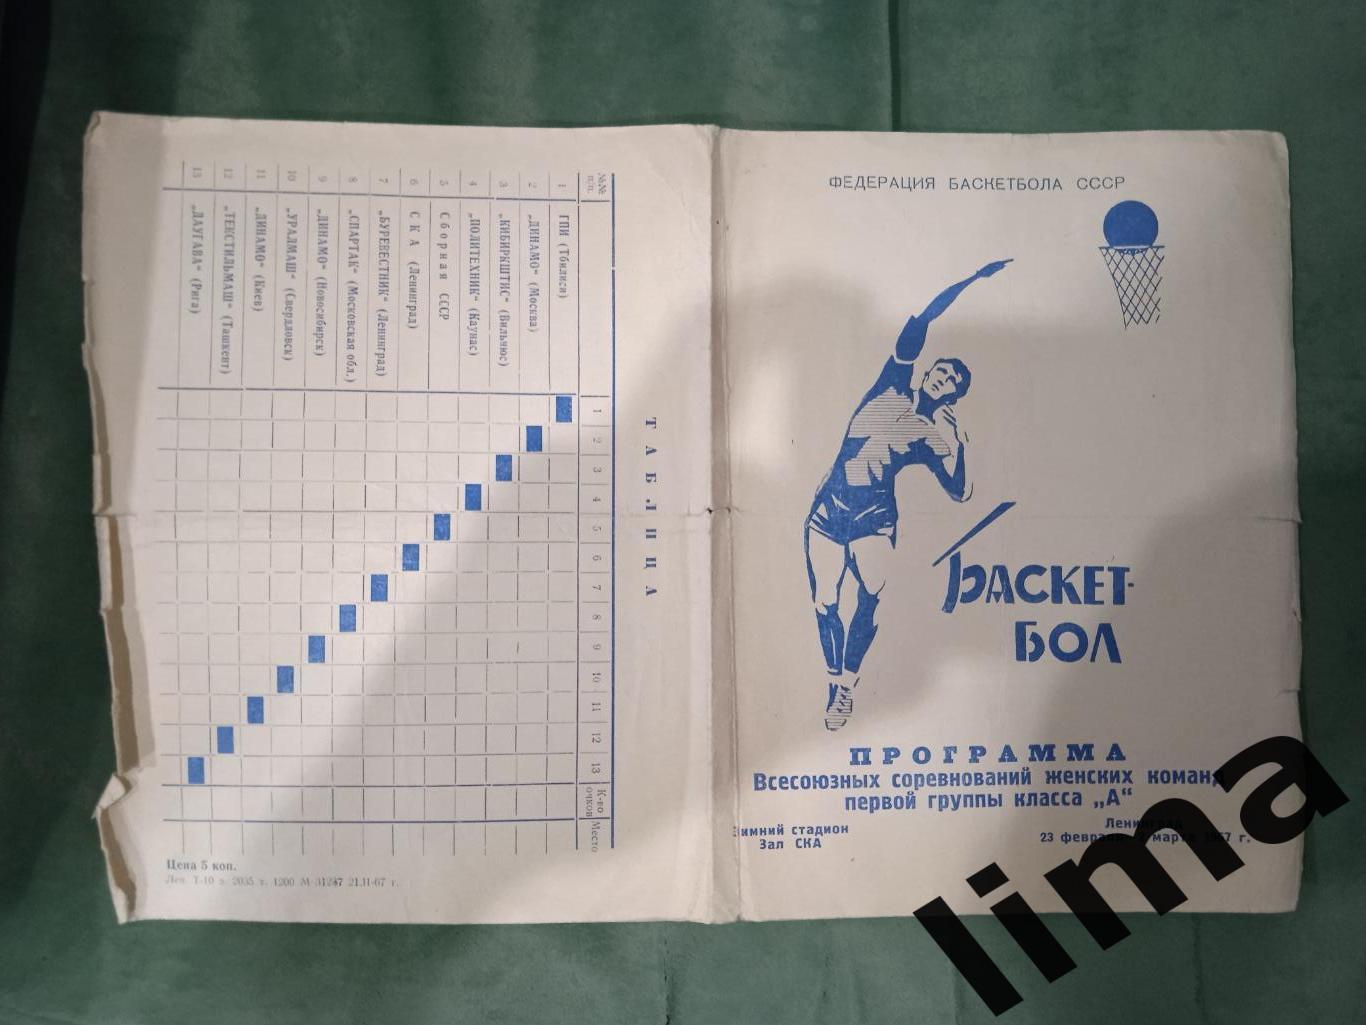 Баскетбол турнир-женщины-Спартак Мос.обл.,СССР,Динамо,1967 год